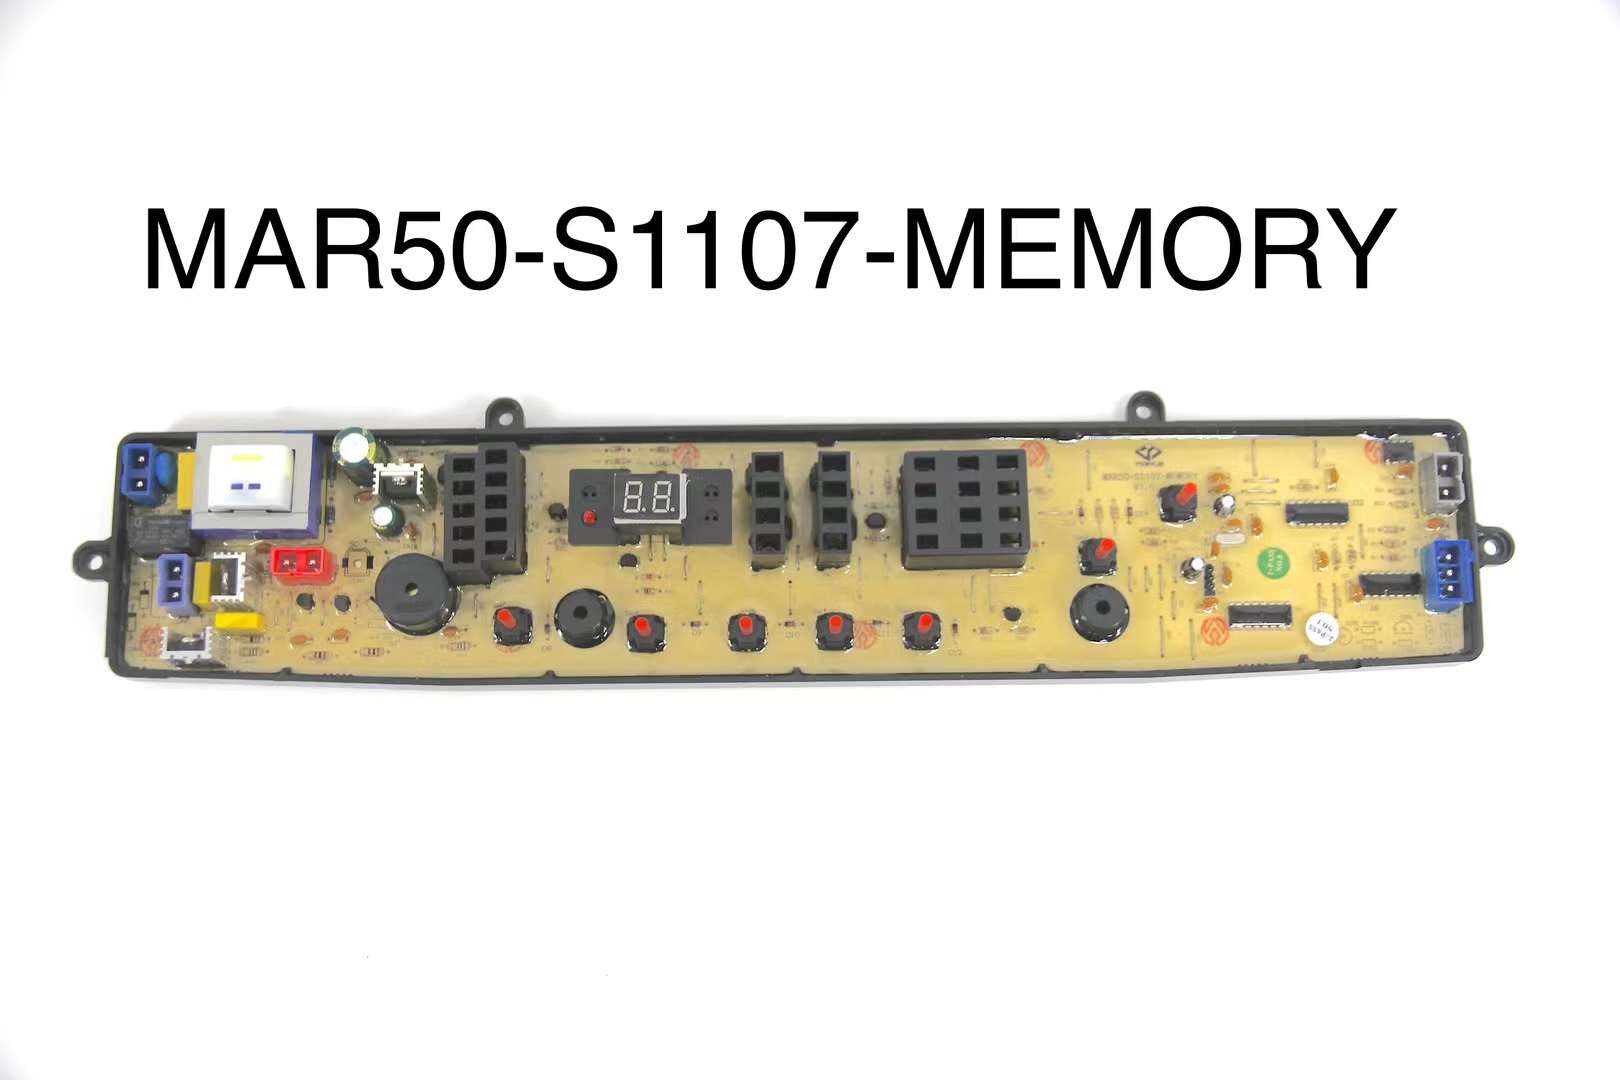 MAR50-S1107-Memory